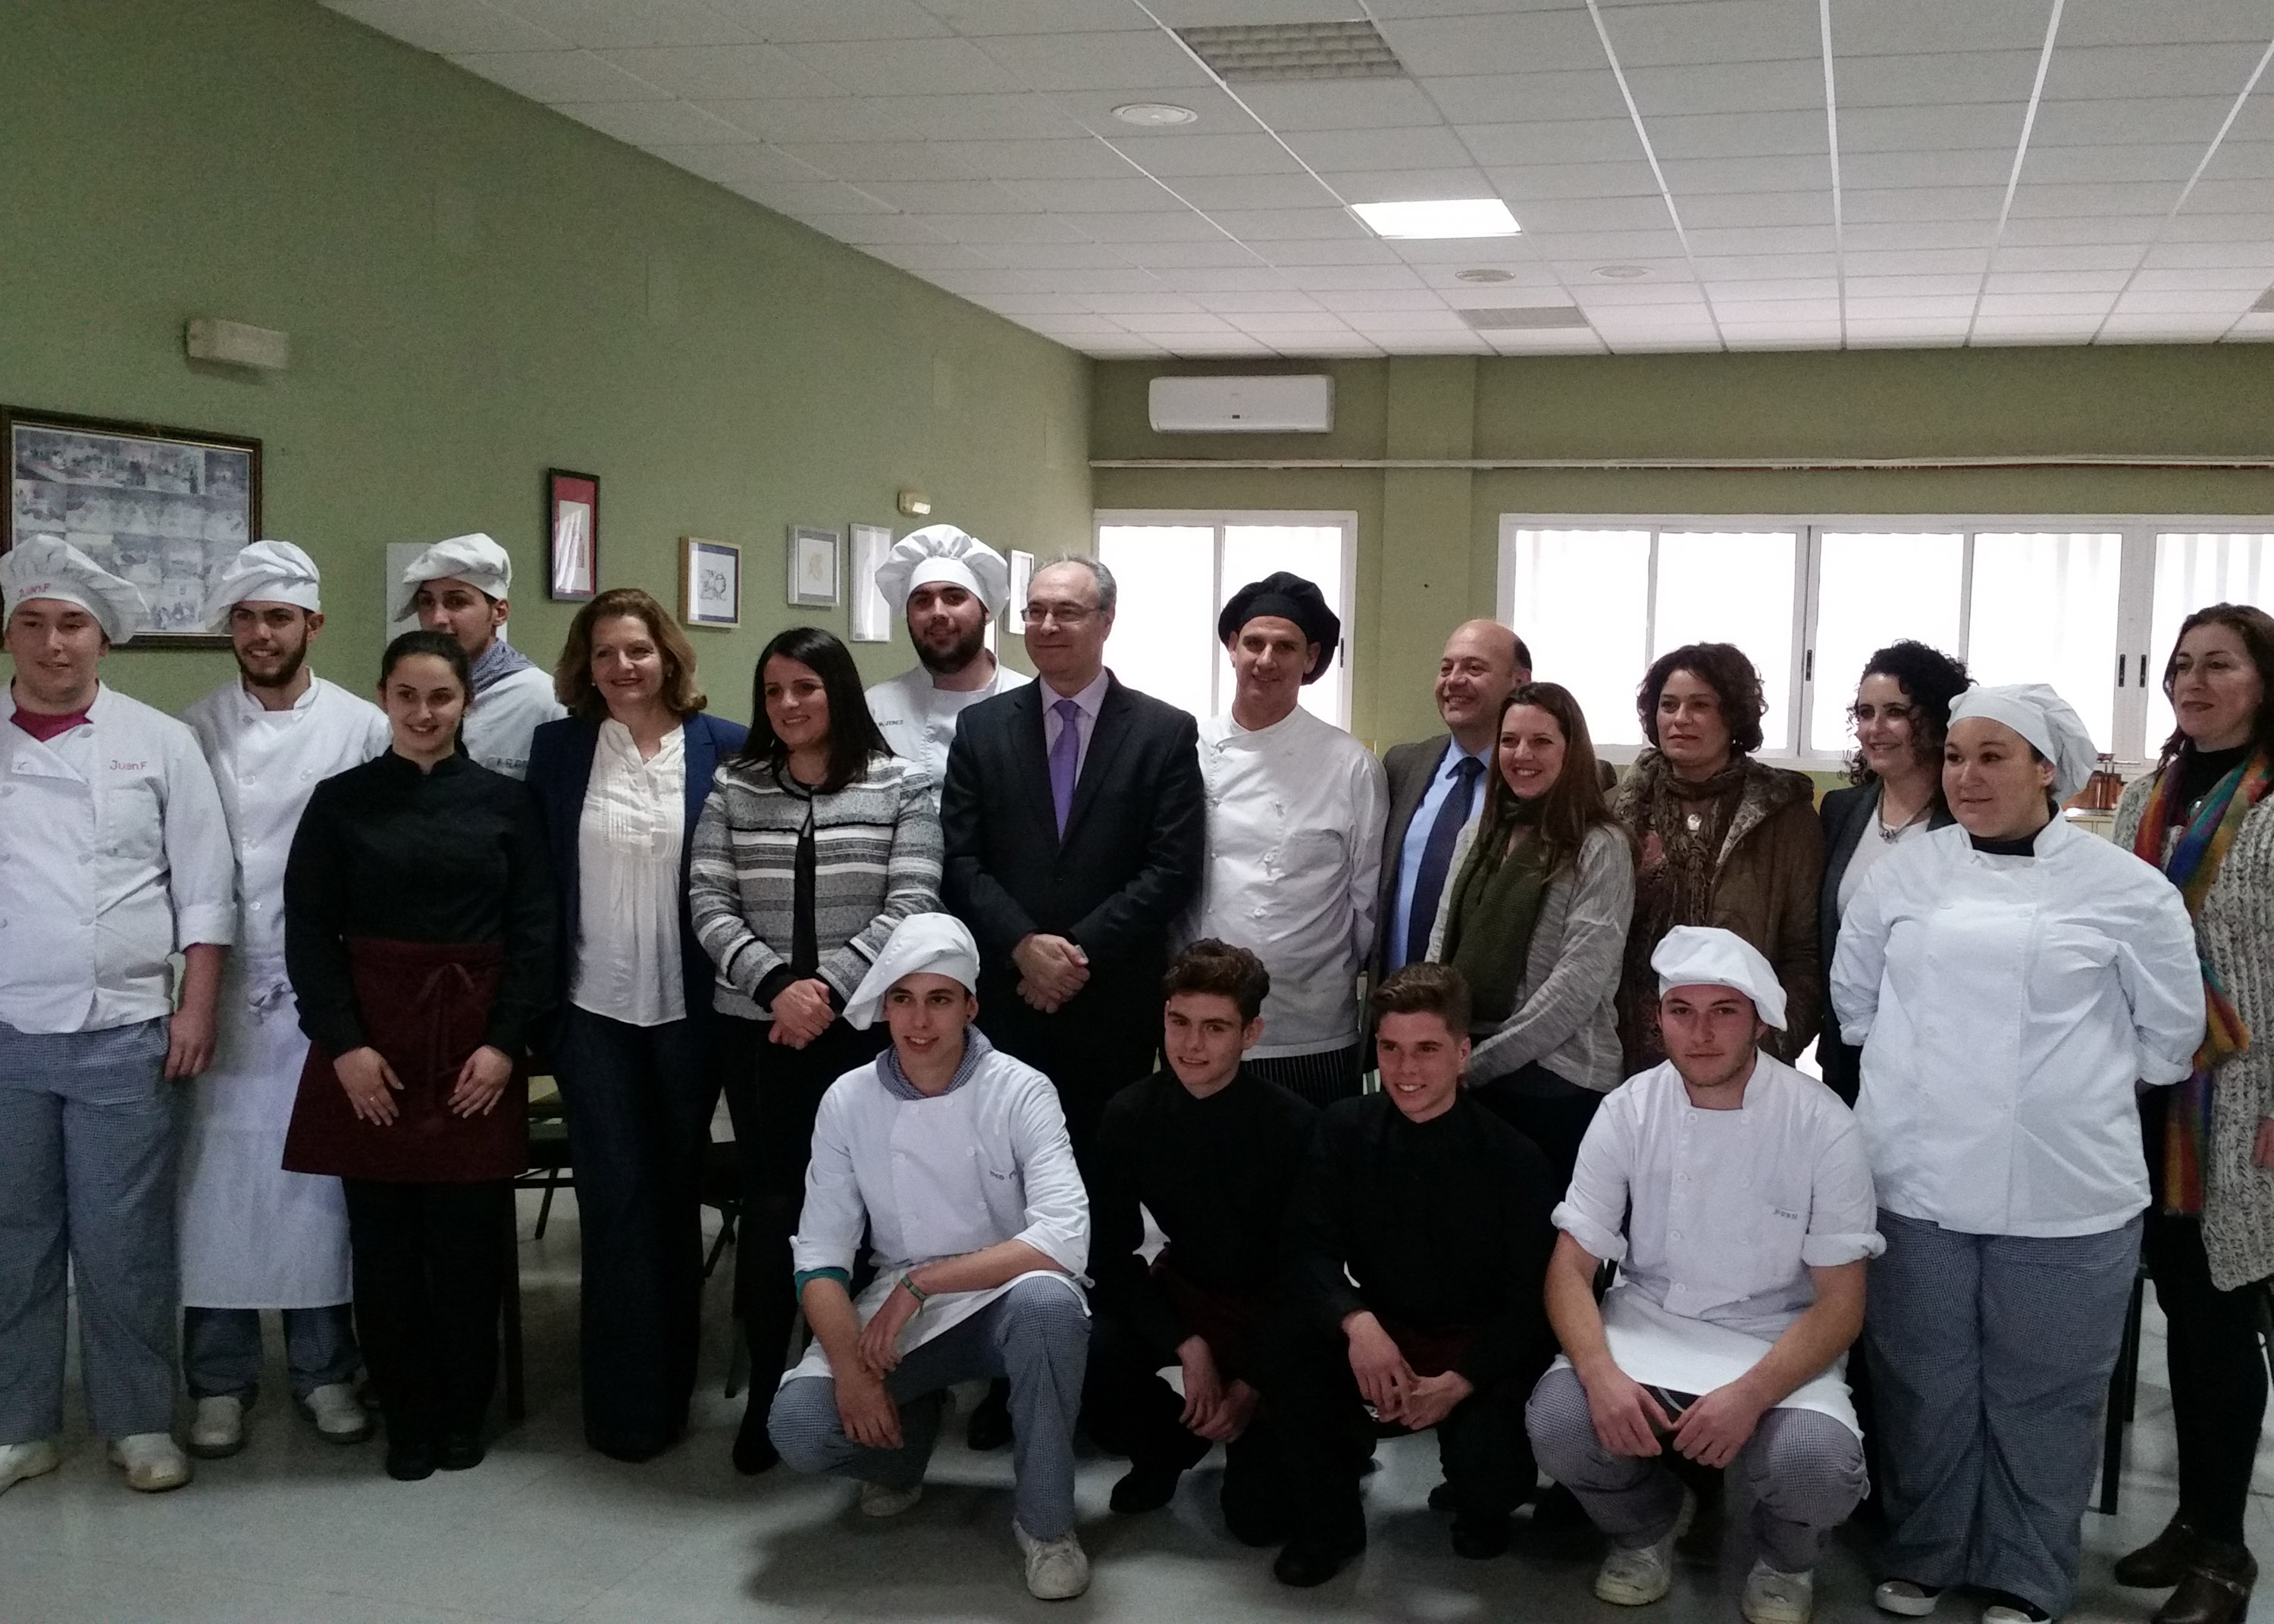 El presidente del Parlamento, con alumnos del ciclo formativo de hostelera del IES Doana de Almonte